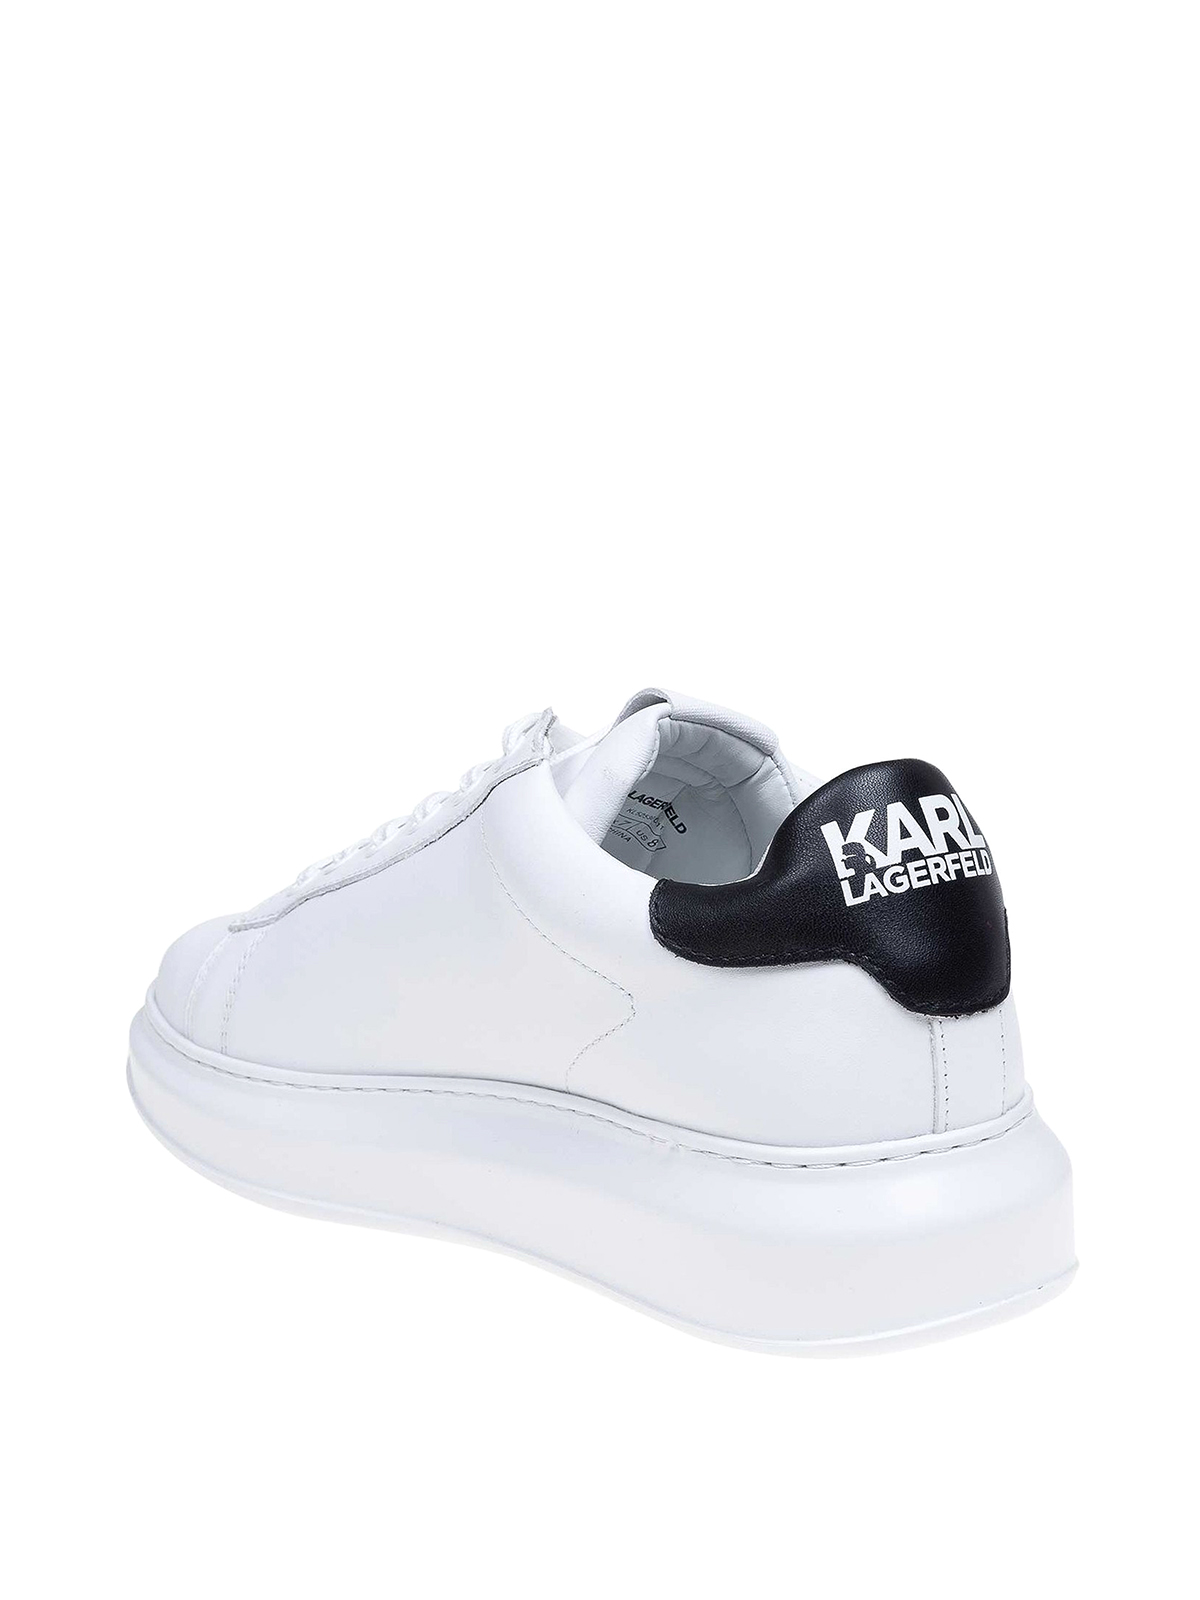 voor eeuwig archief Bonus Trainers Karl Lagerfeld - Karl patch white leather sneakers - KL52530011